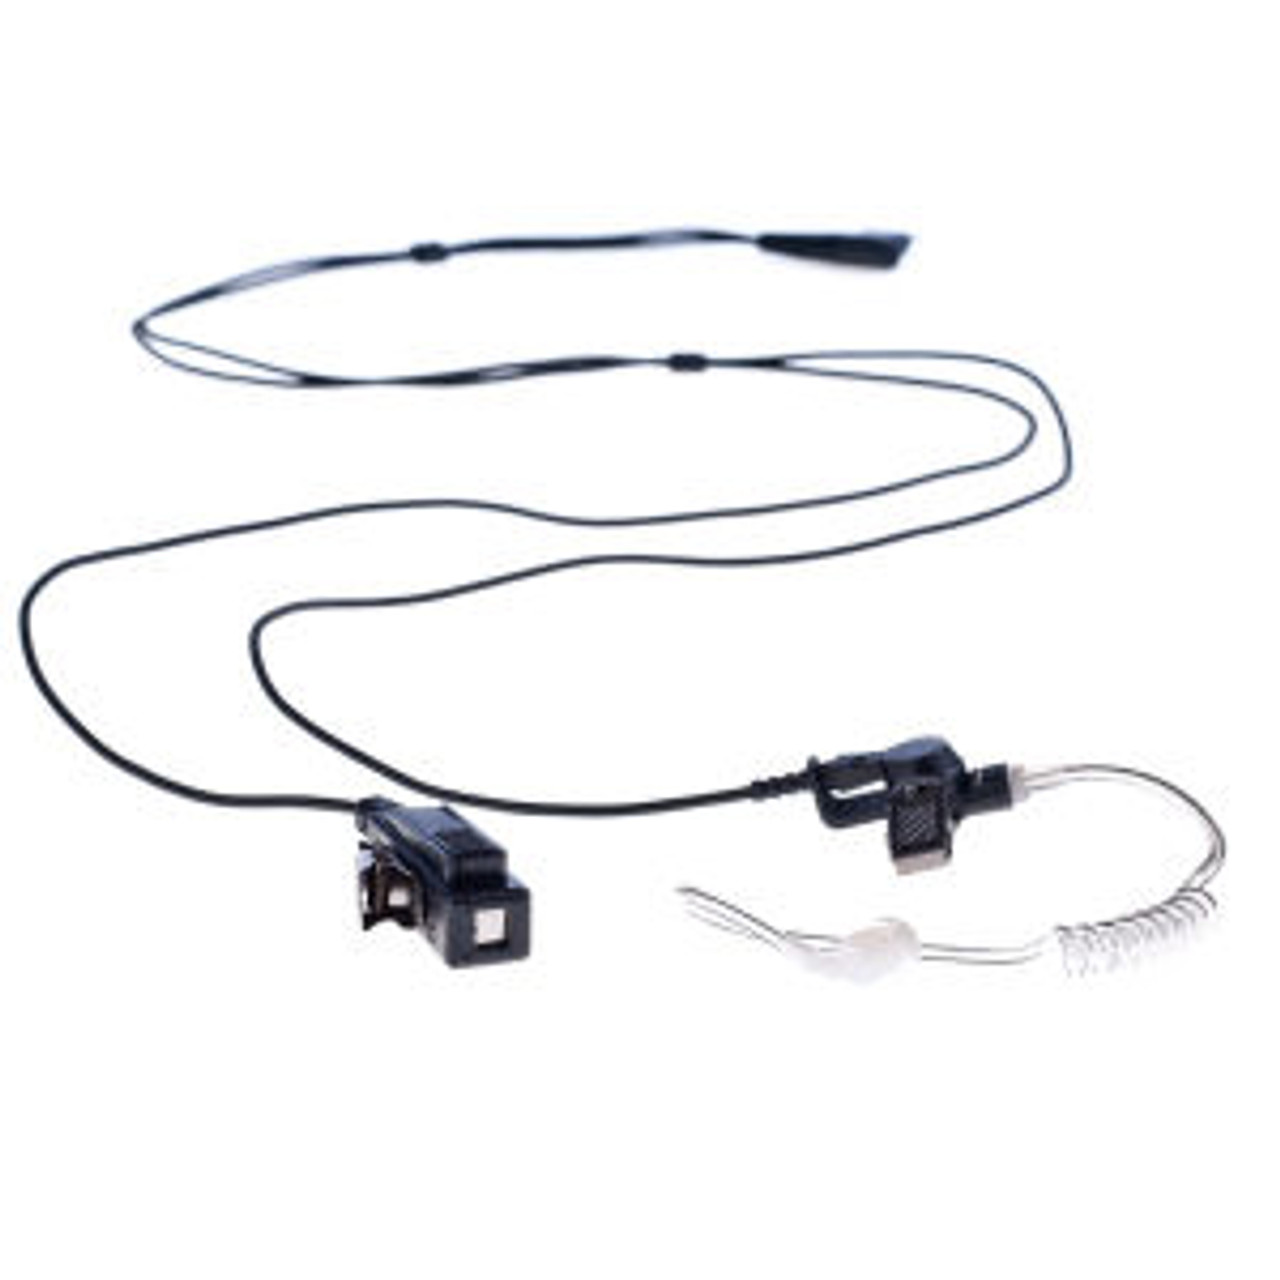 M/A-Com P5130 2-Wire Surveillance Kit